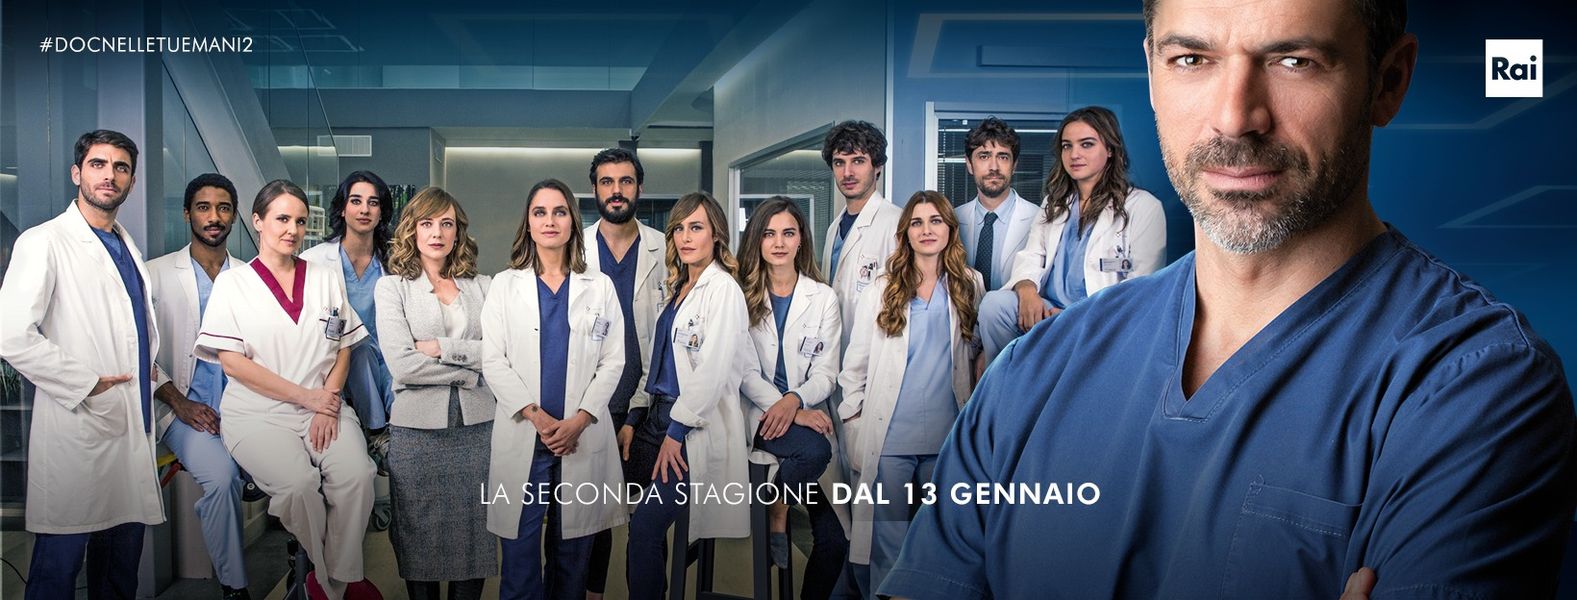 Tutta la squadra medica di DOC 2, con Luca Argentero in primo piano sulla destra. In sovrimpressione la scritta "La seconda stagione dal 13 gennaio"